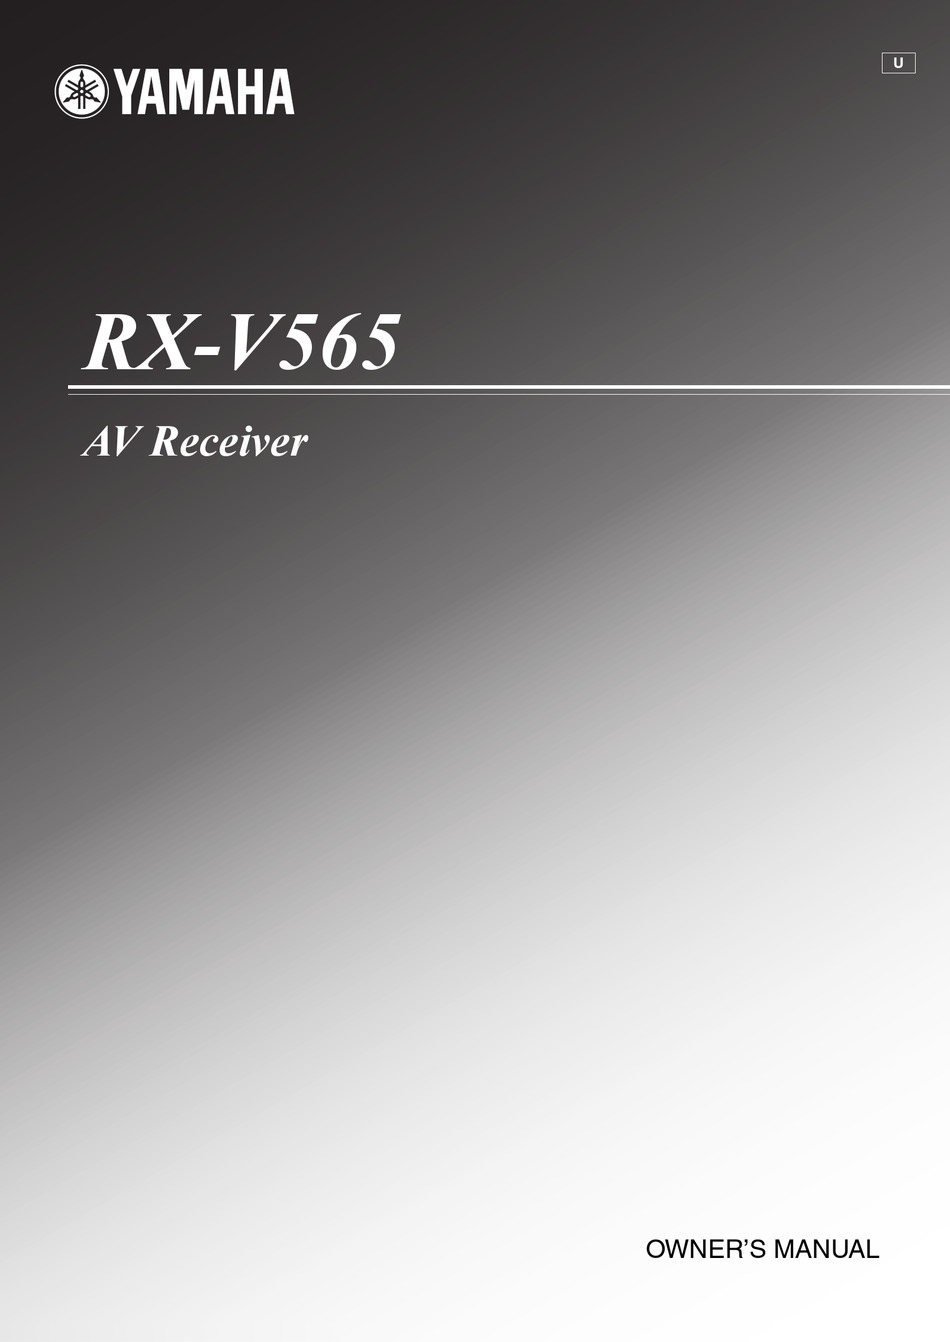 YAMAHA RX V565 OWNER'S MANUAL Pdf Download | ManualsLib